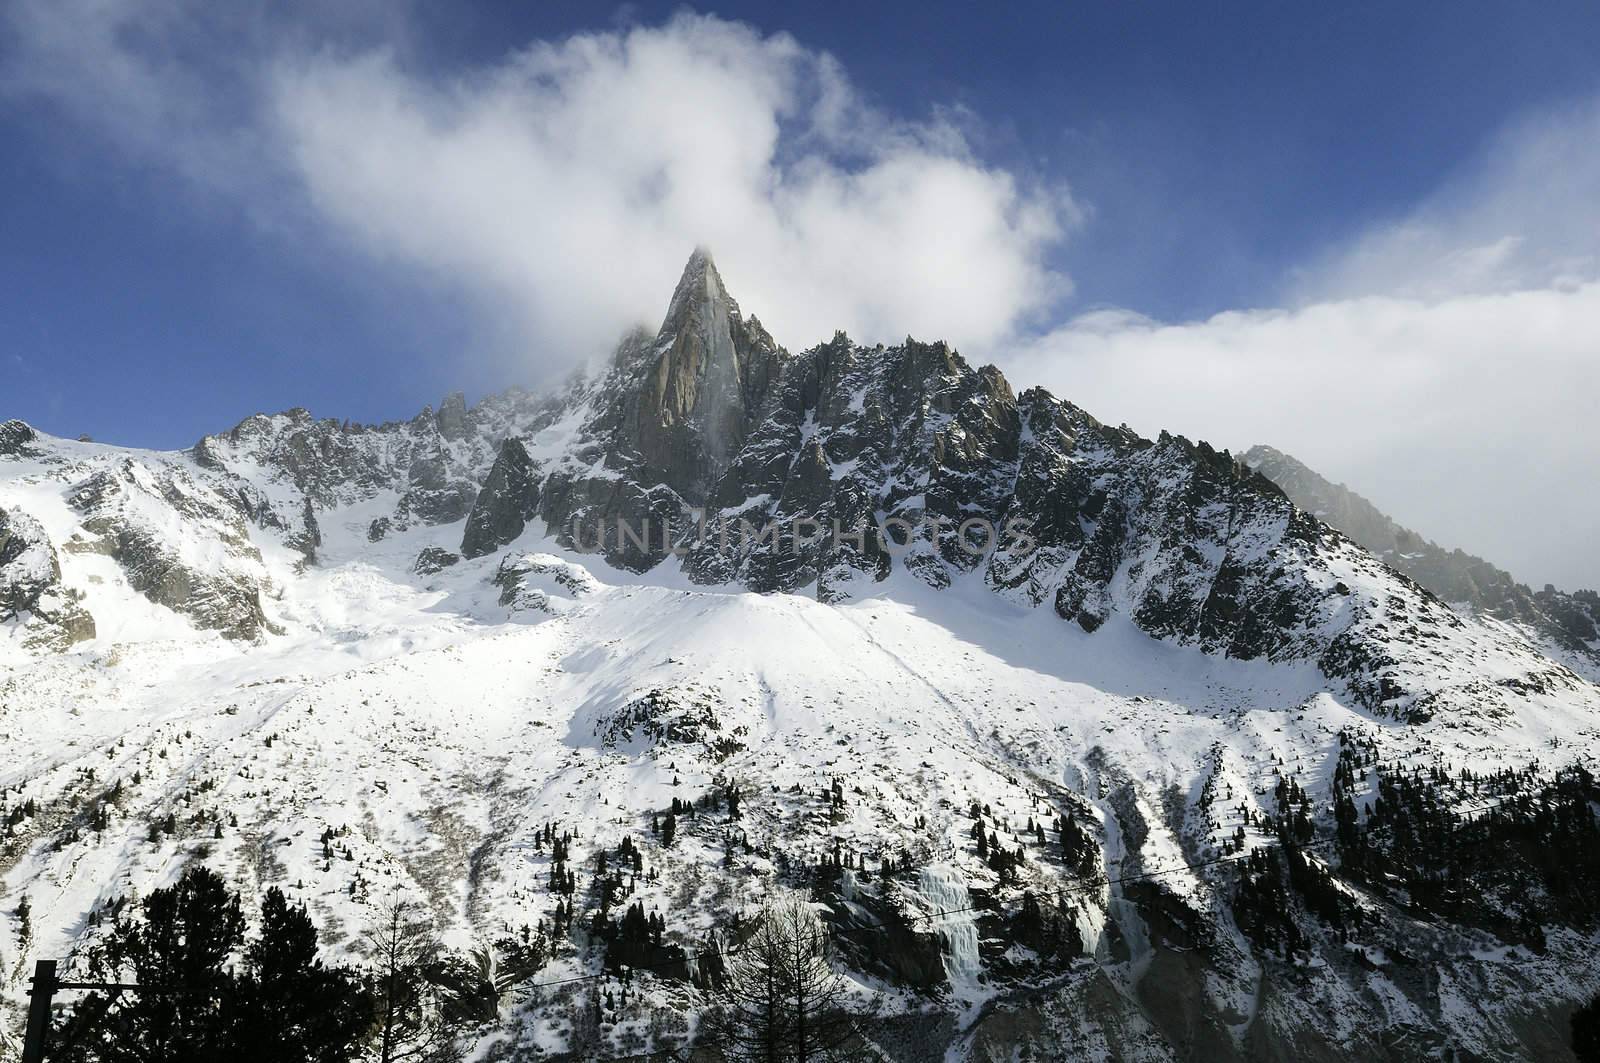 Dru pick, famous alps mountain near Chamonix, France